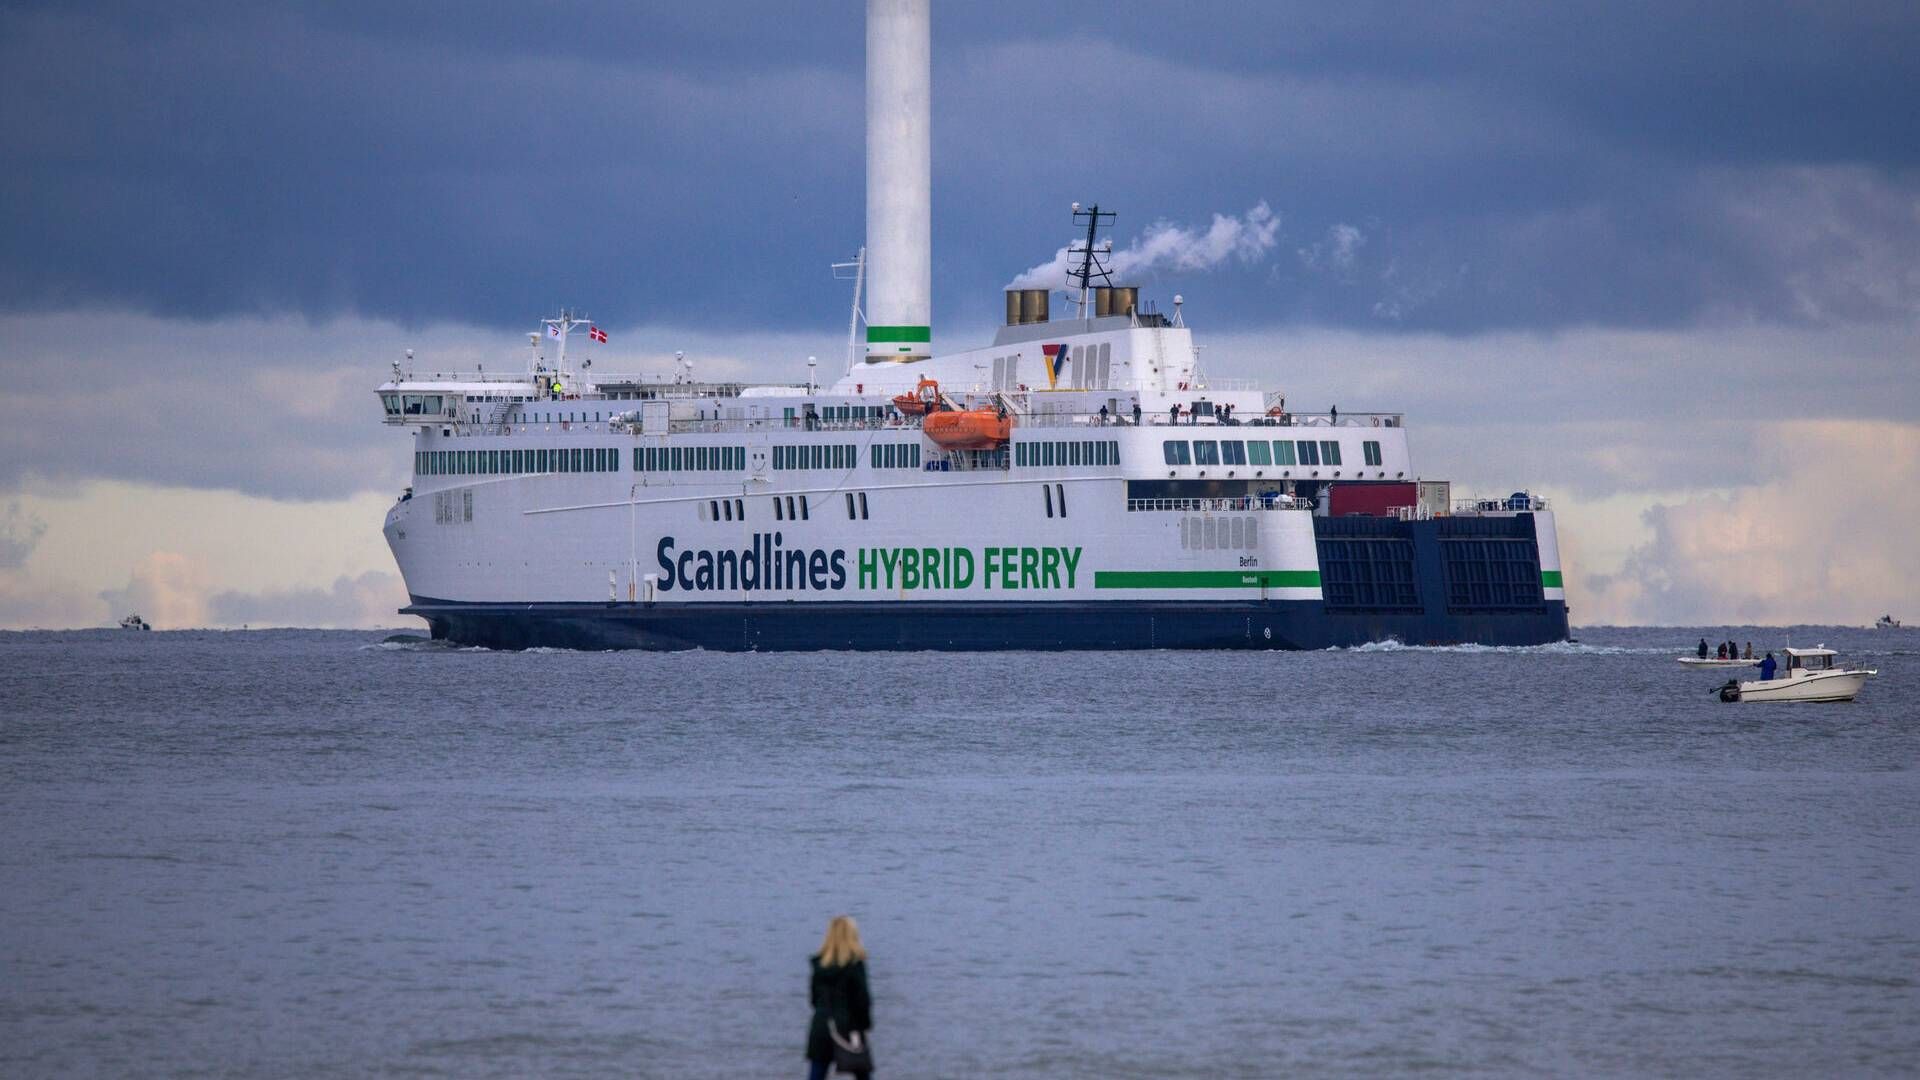 Skiftet på færgerederiets post som fragtchef sker, efter den tidligere fragtchef går på pension. | Foto: Jens B'ttner/AP/Ritzau Scanpix